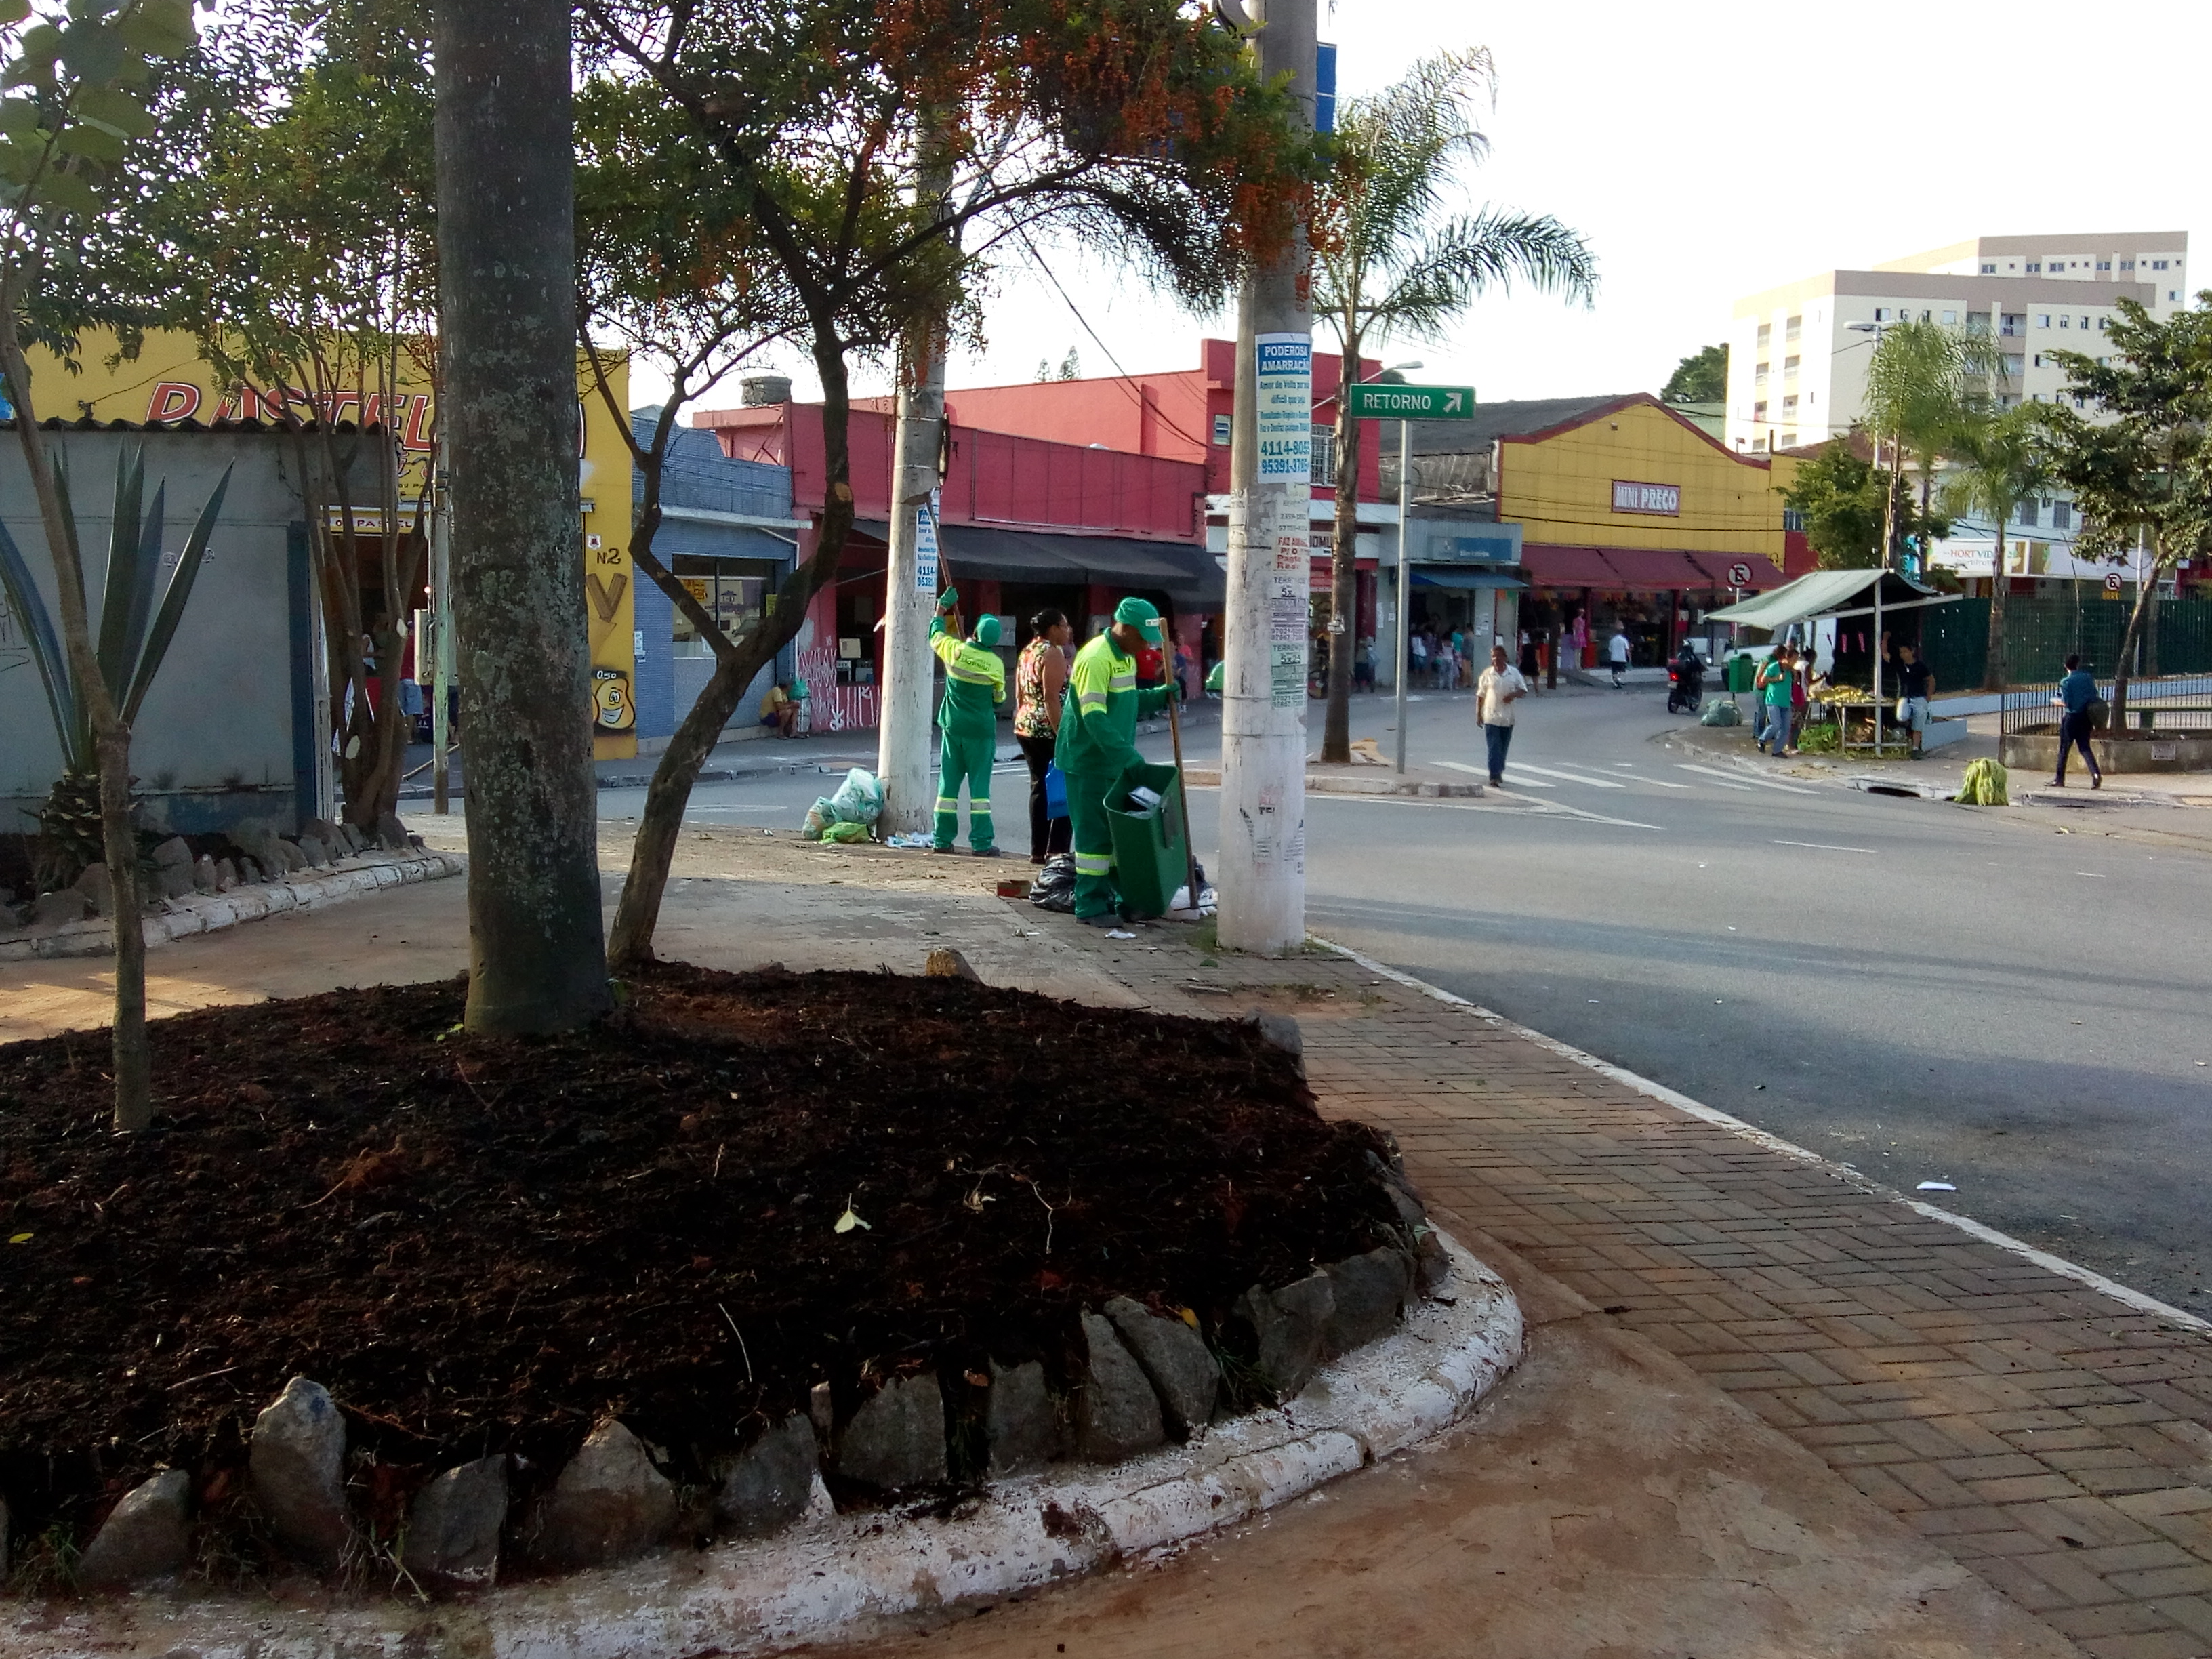 #PraCegoVer - No primeiro plano, um canteiro com uma árvore e mudas de flores. Trabalhadores da Prefeitura, em macacões verde-amarelos, limpam a praça. Ao fundo, as casas comerciais da região